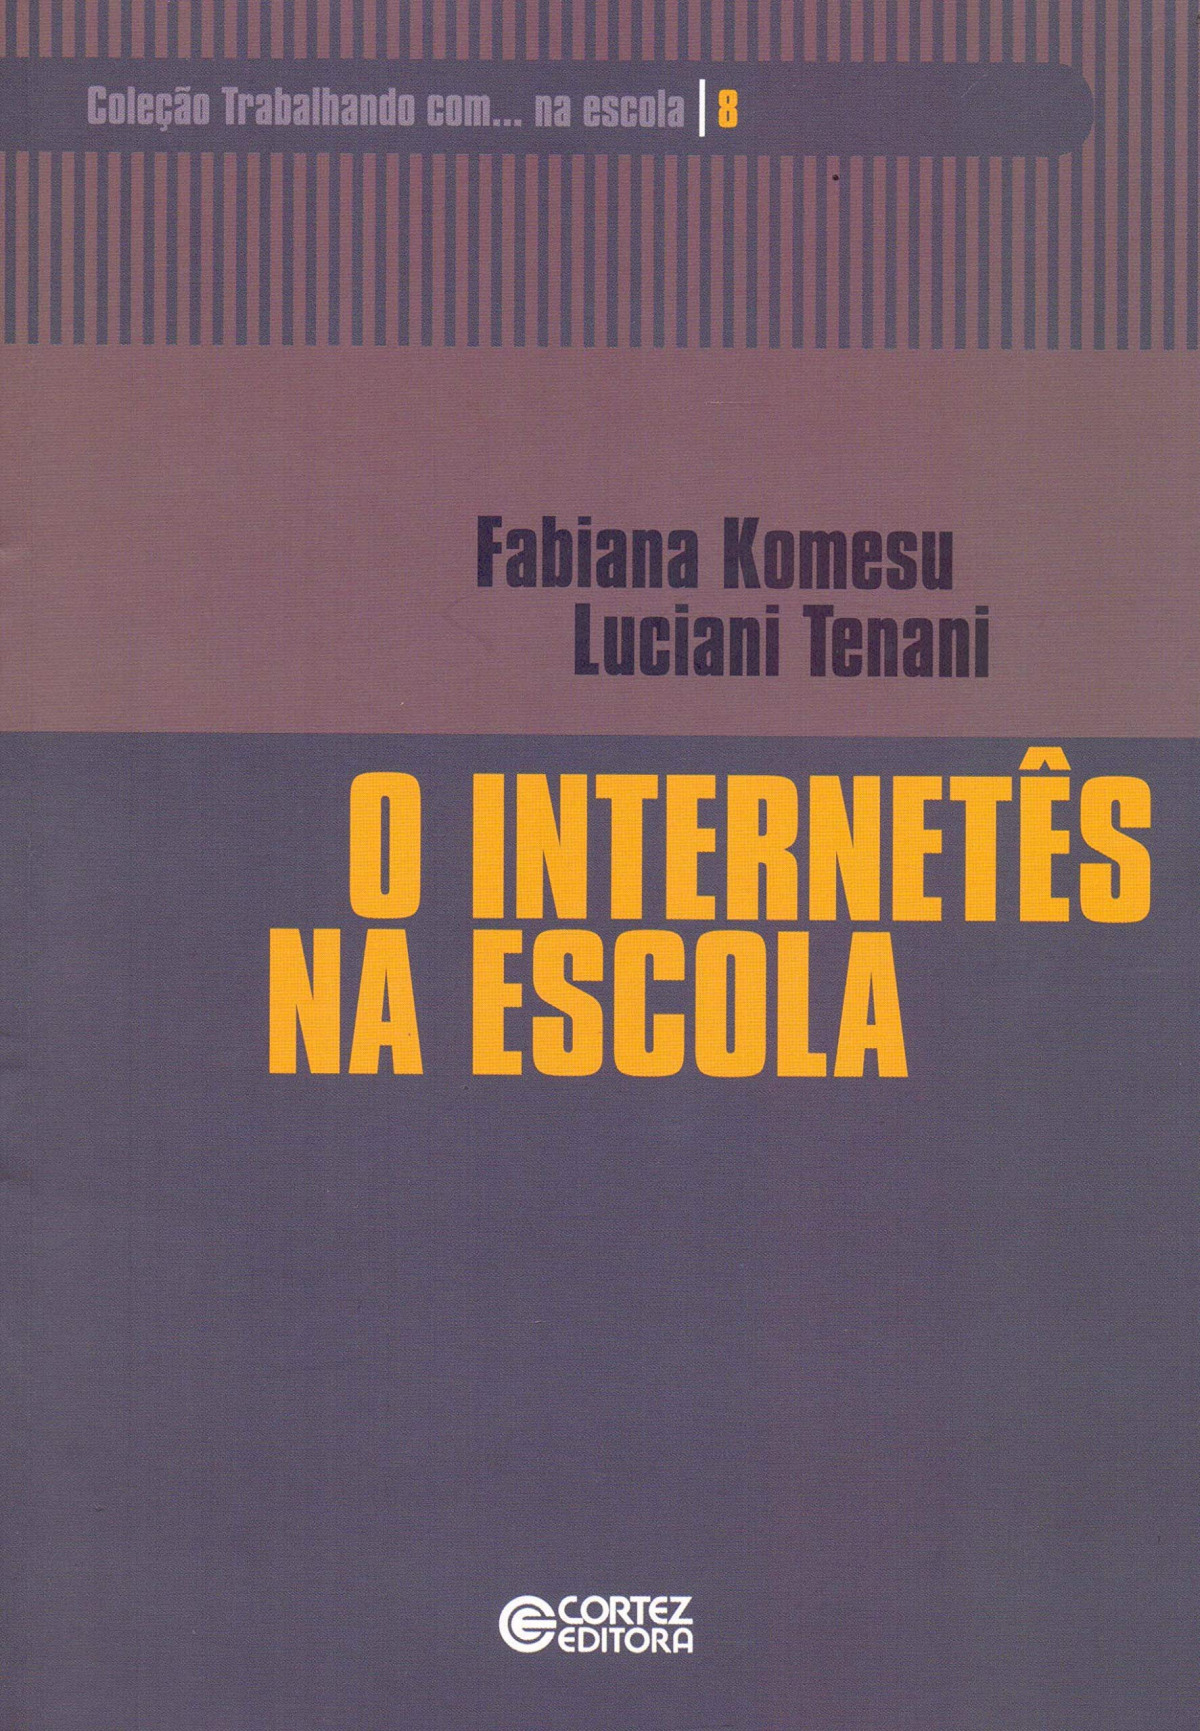 O internetês na escola - Fabiana Komesu e Luciani Tenani